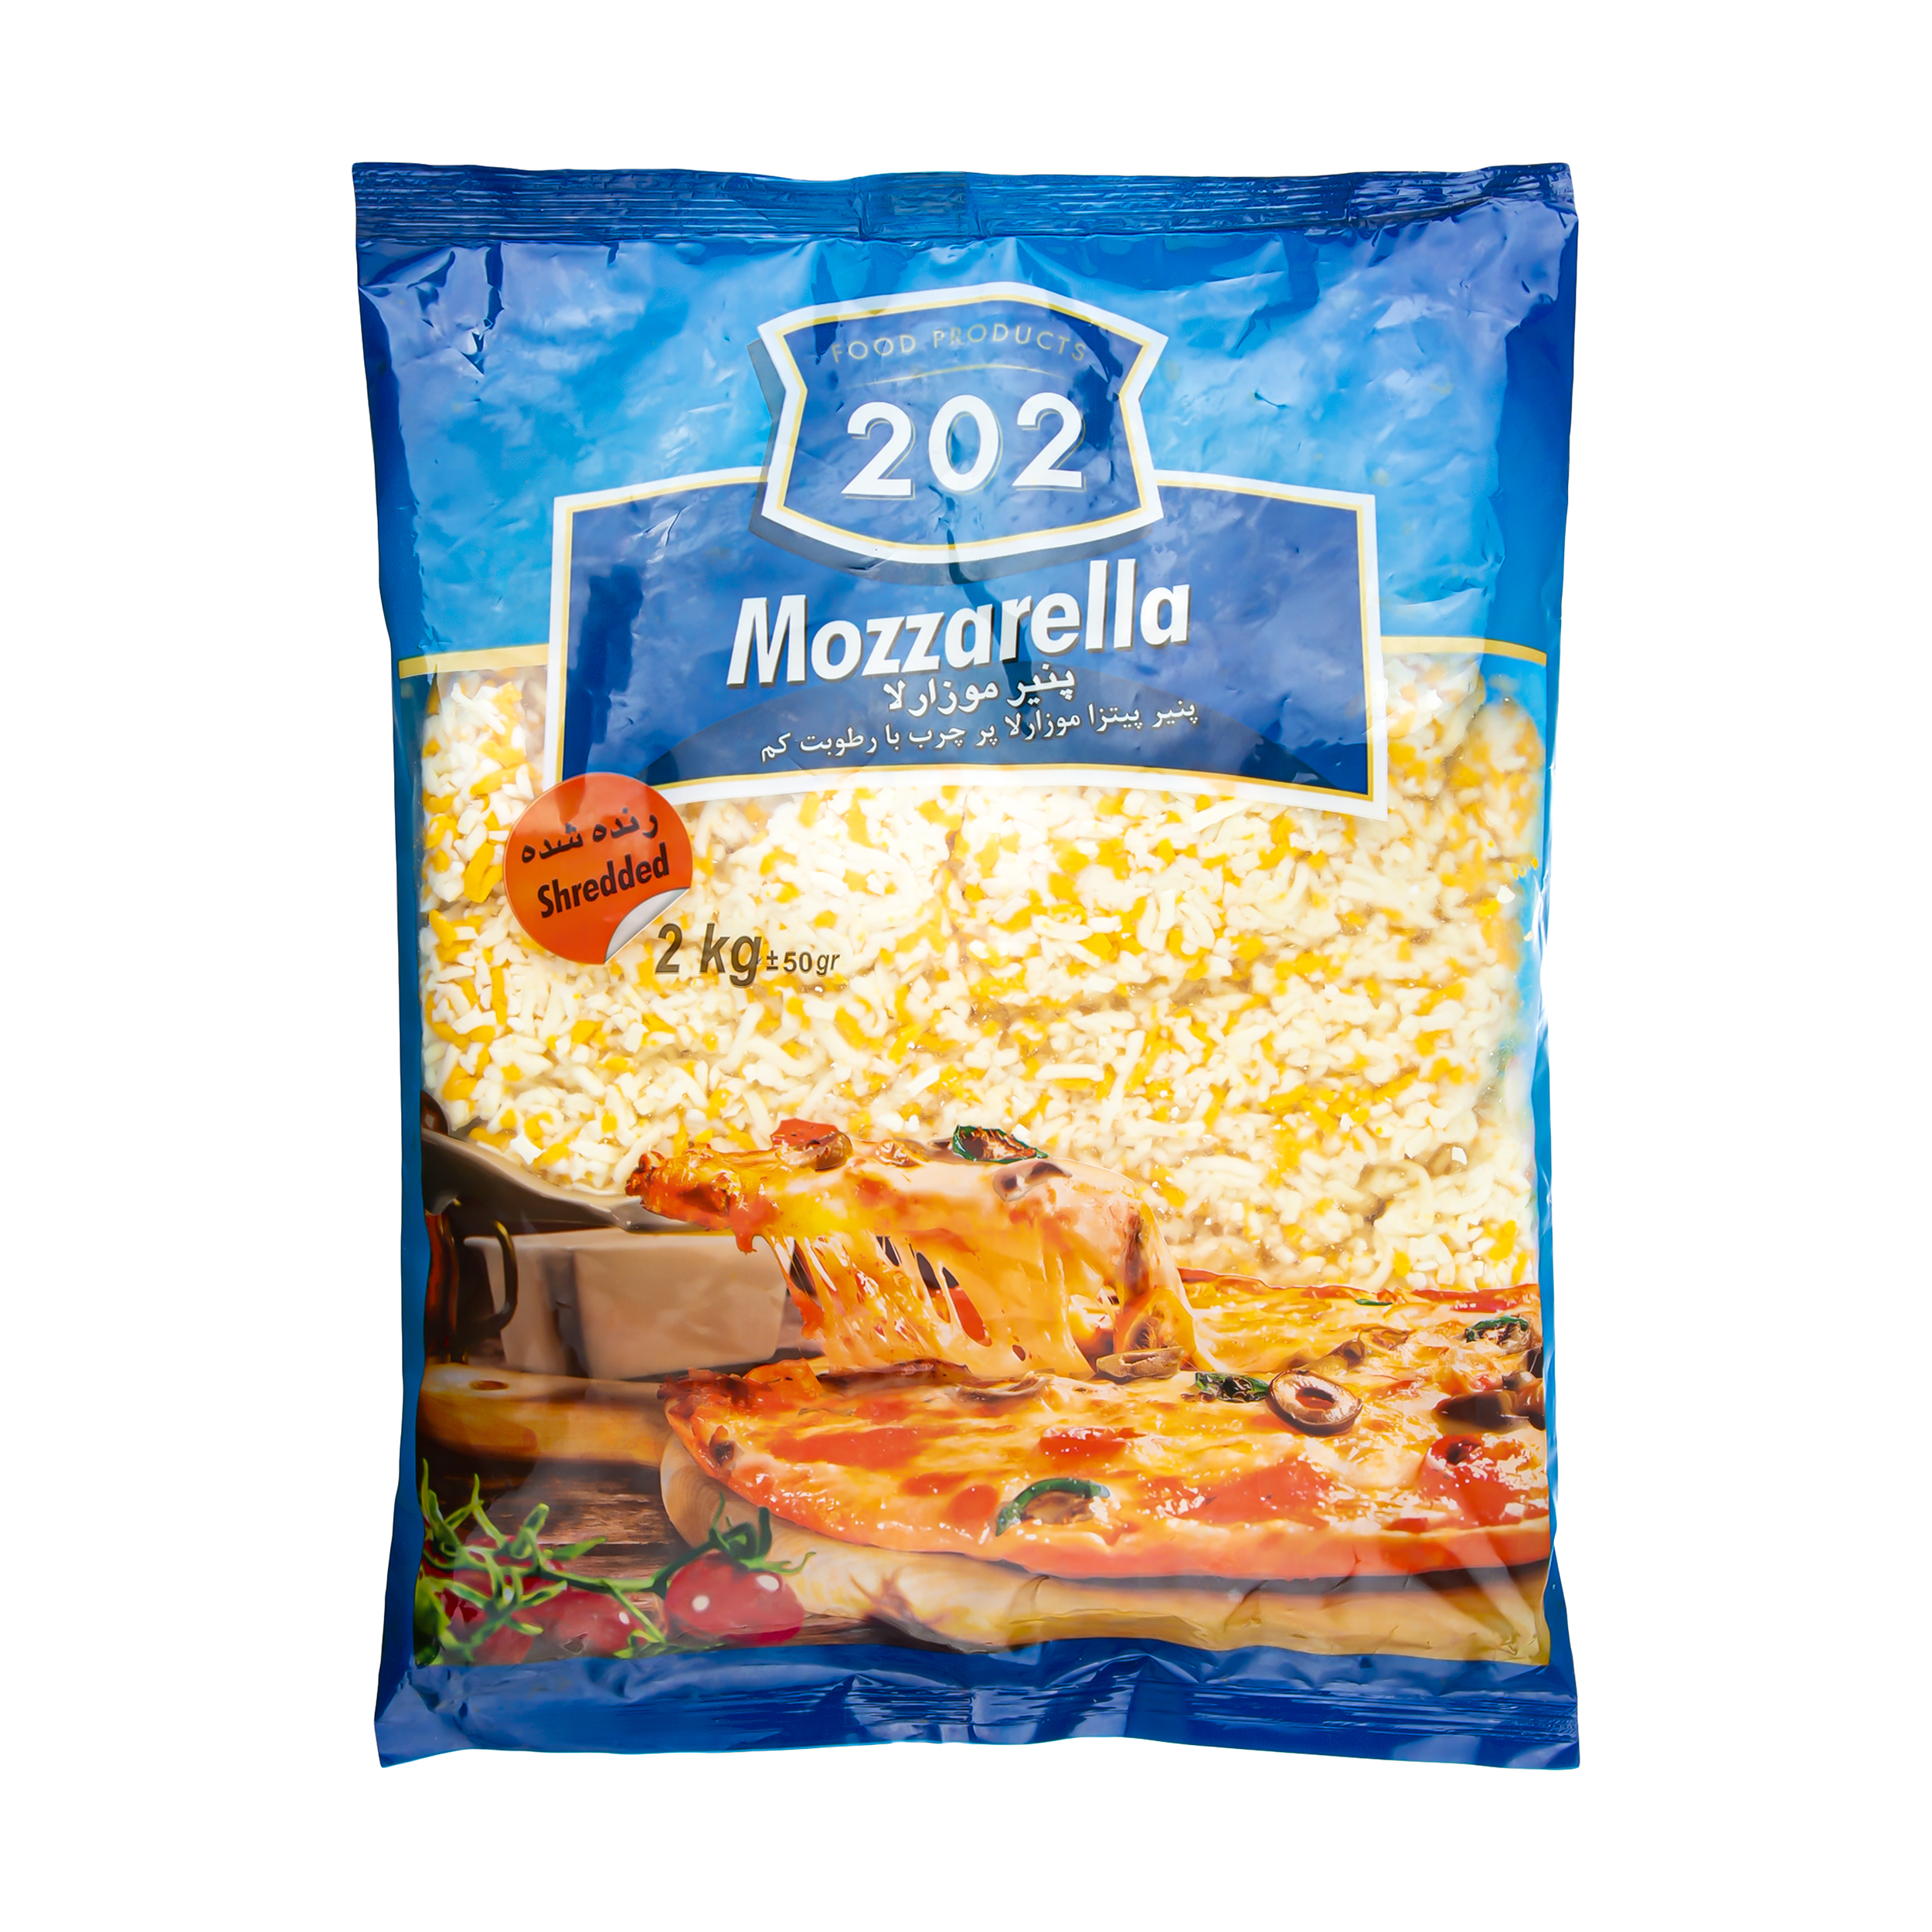 پنیر پیتزا موزارلا 202 - 2 کیلوگرم  